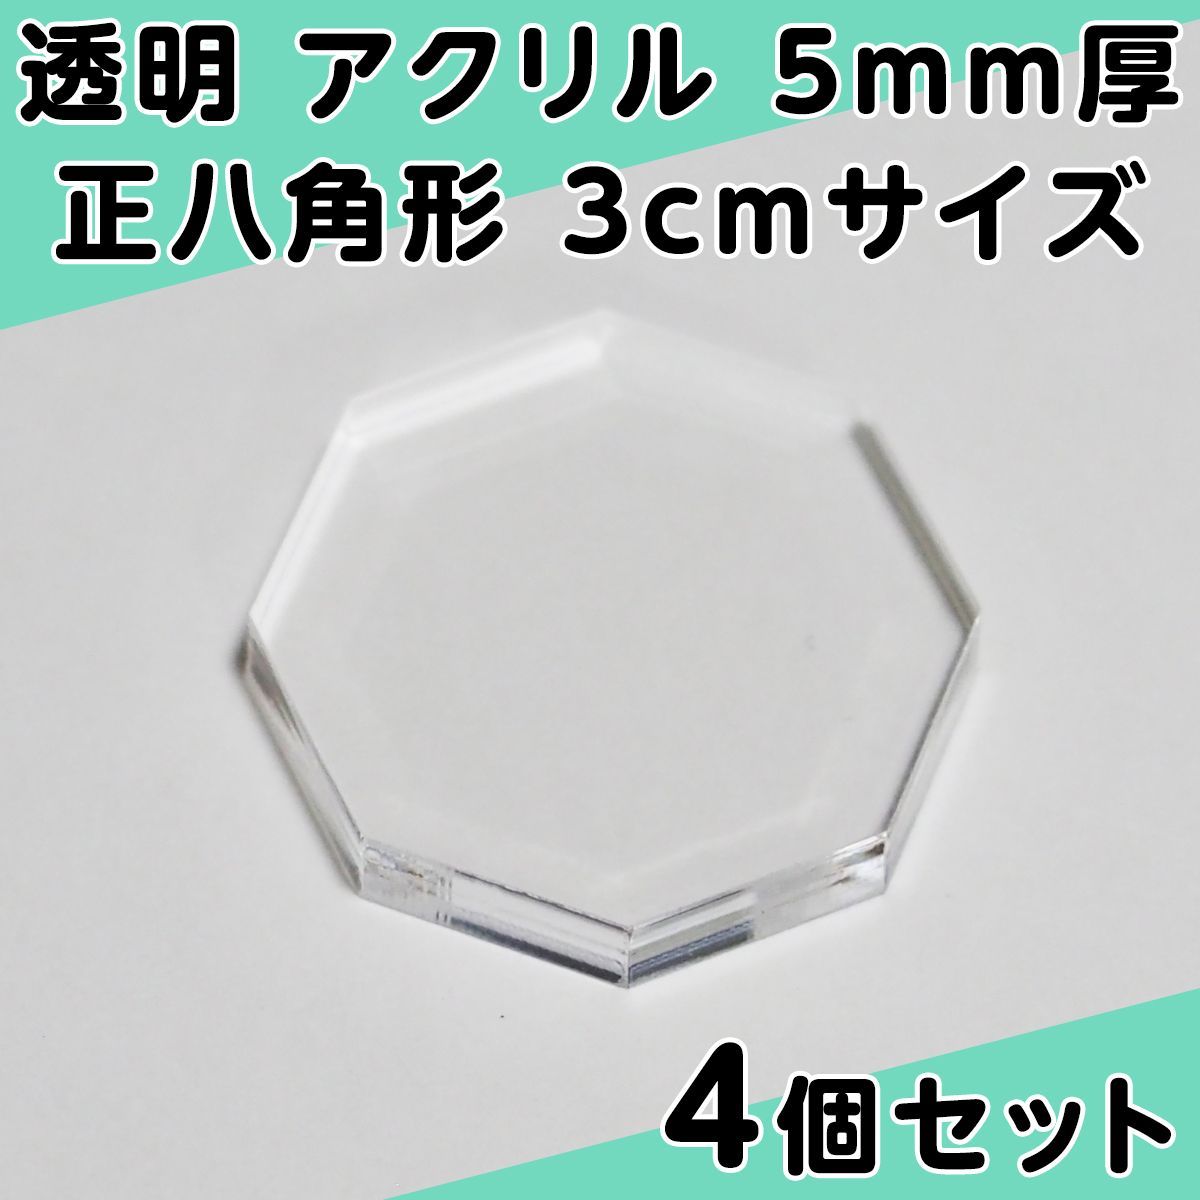 透明 アクリル 5mm厚 正八角形 3cmサイズ 4個セット - メルカリ